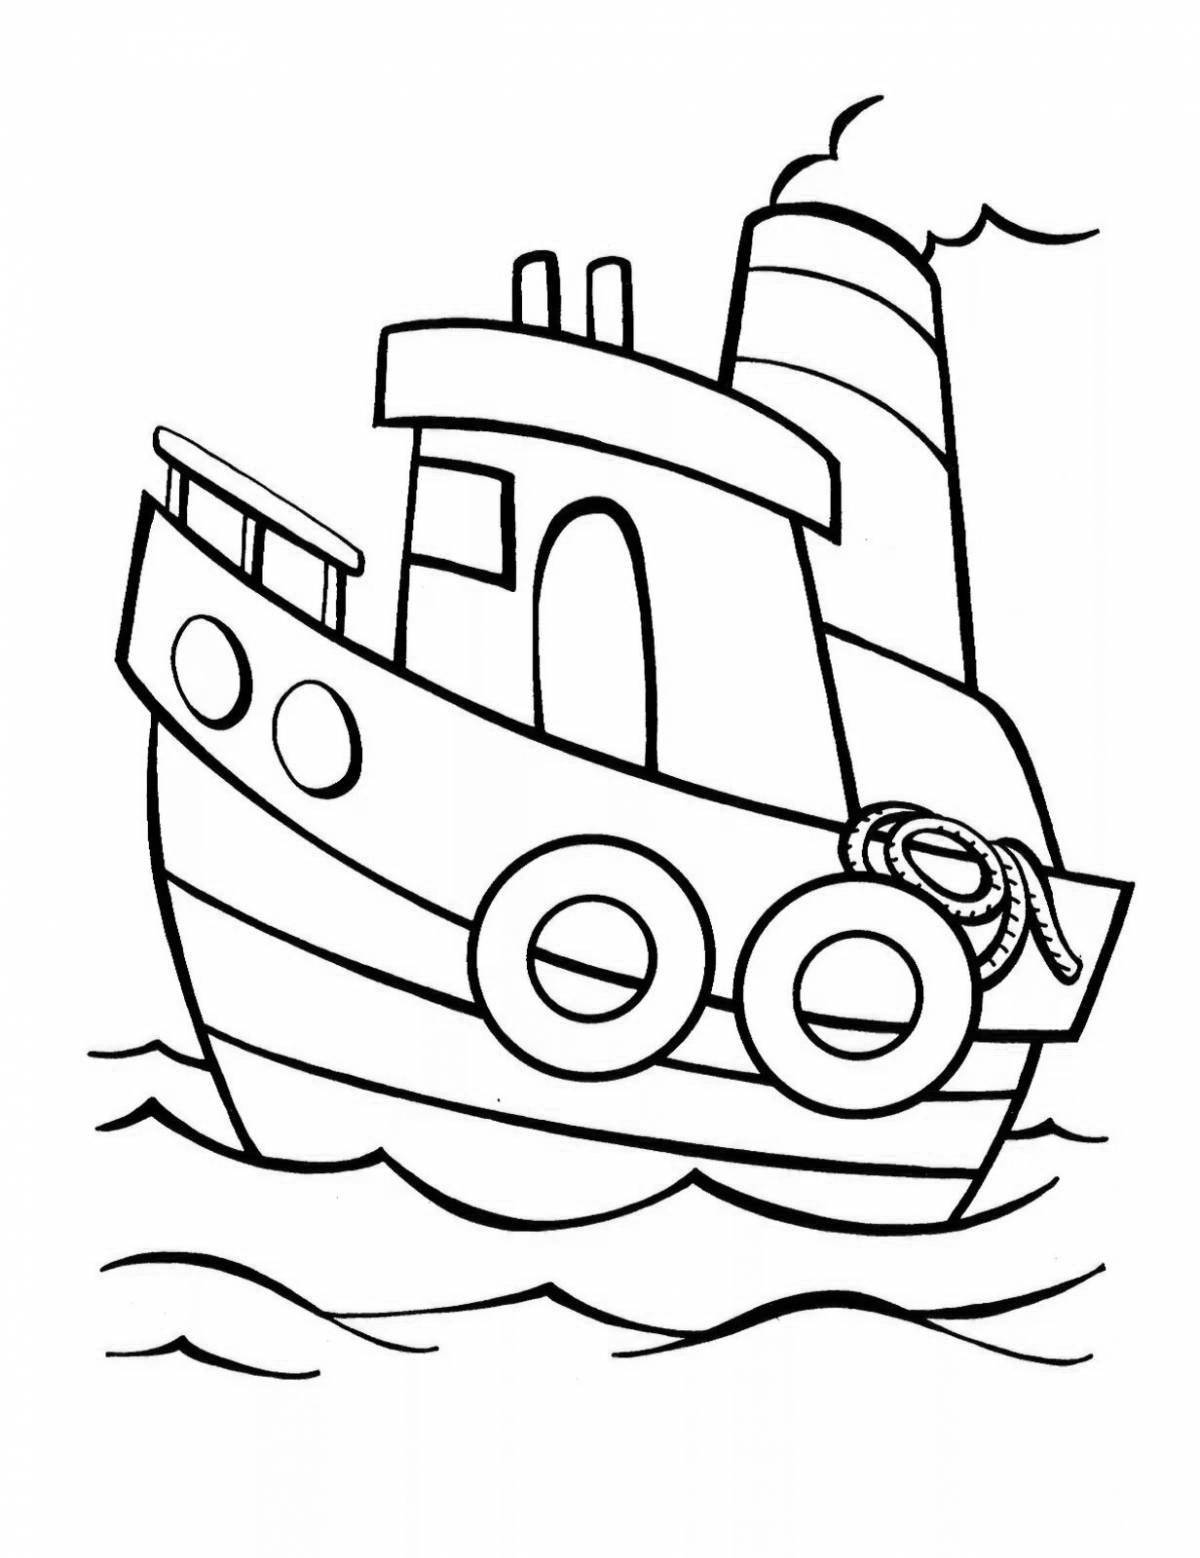 Кораблик для раскрашивания для детей